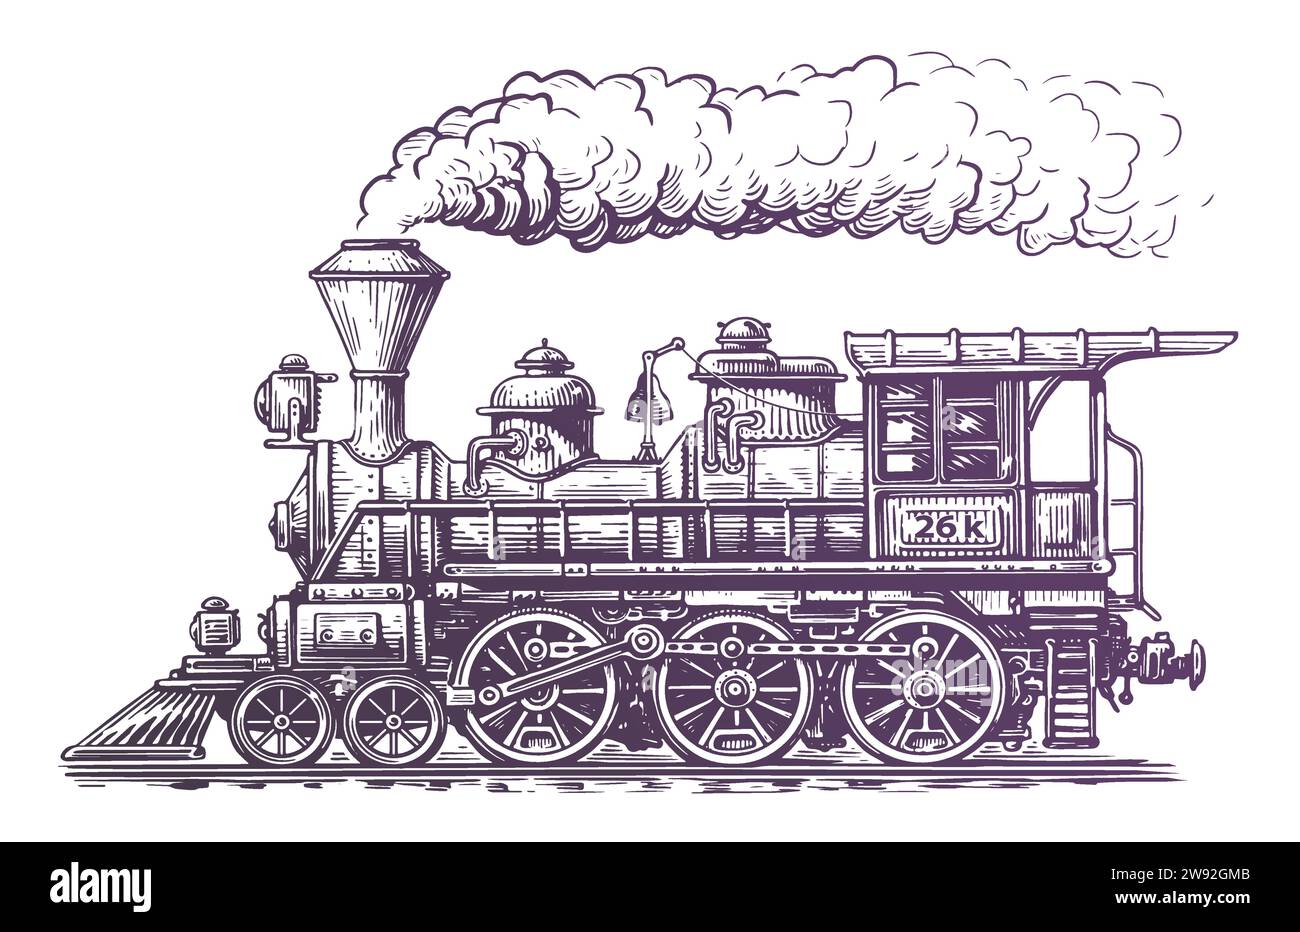 Locomotive de train à vapeur vintage, illustration vectorielle de style gravure. Dessin dessiné à la main rétro transport Illustration de Vecteur